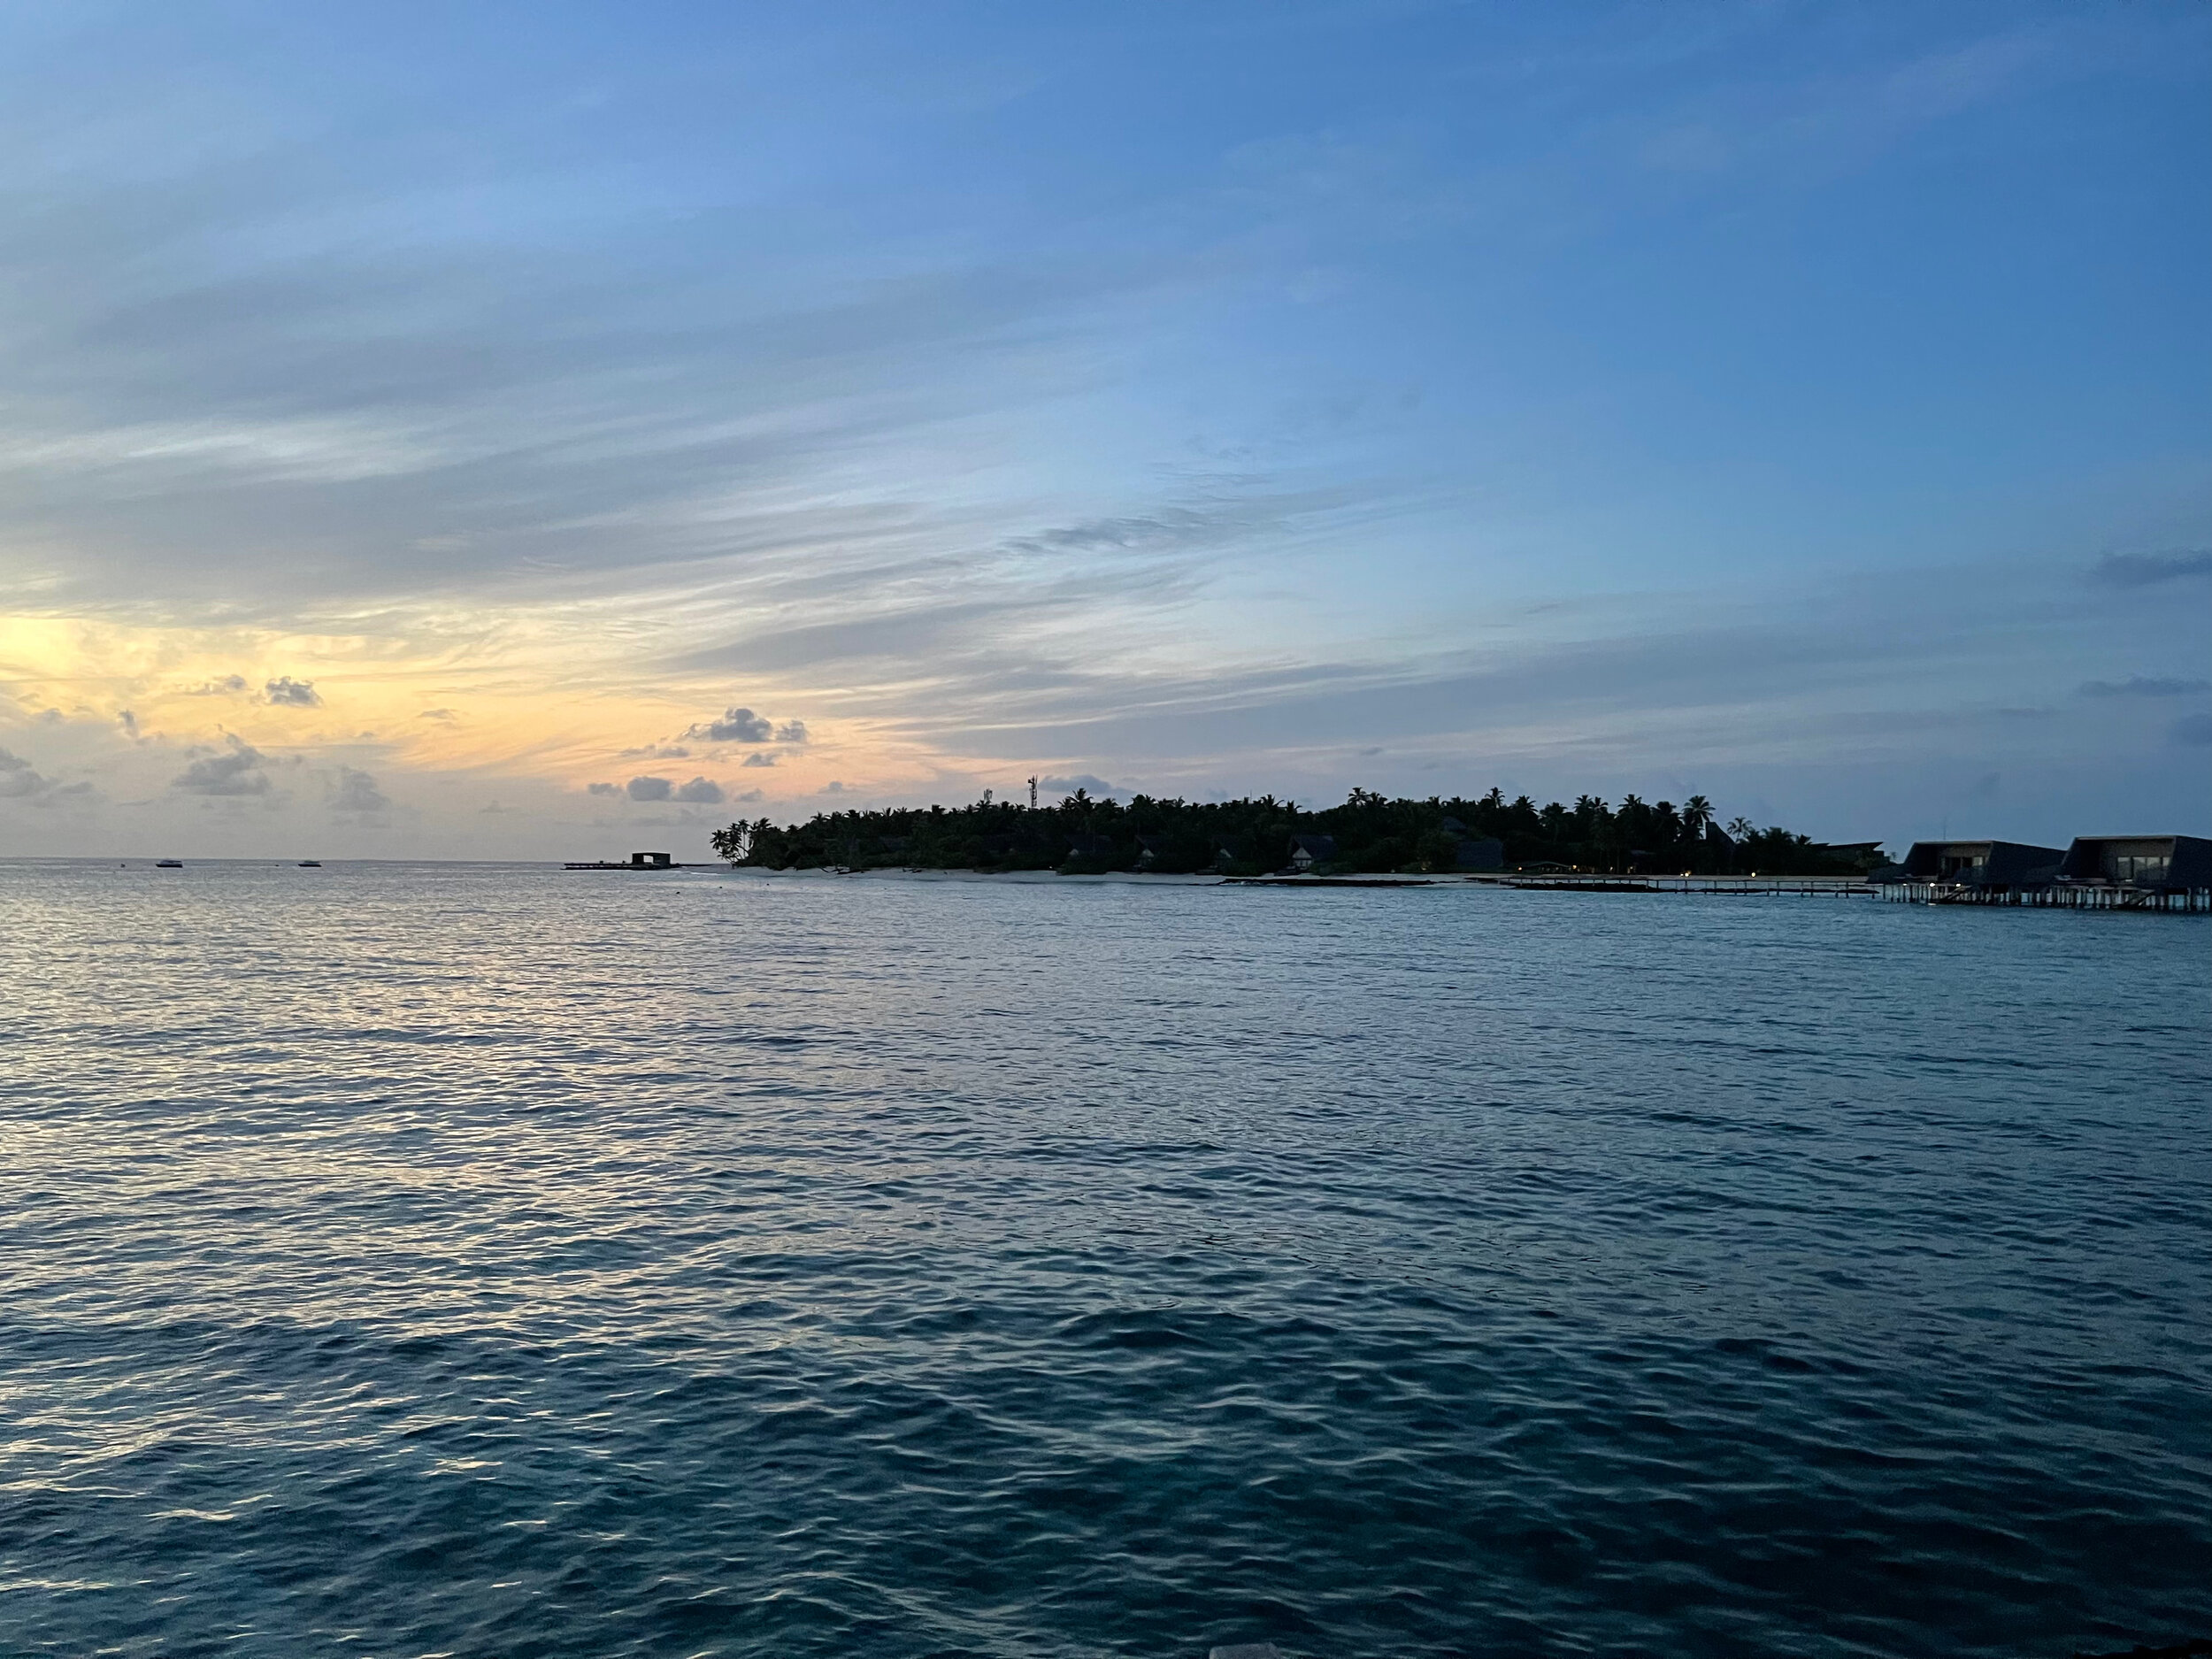 maldives2021_day3_01 - 5.jpeg